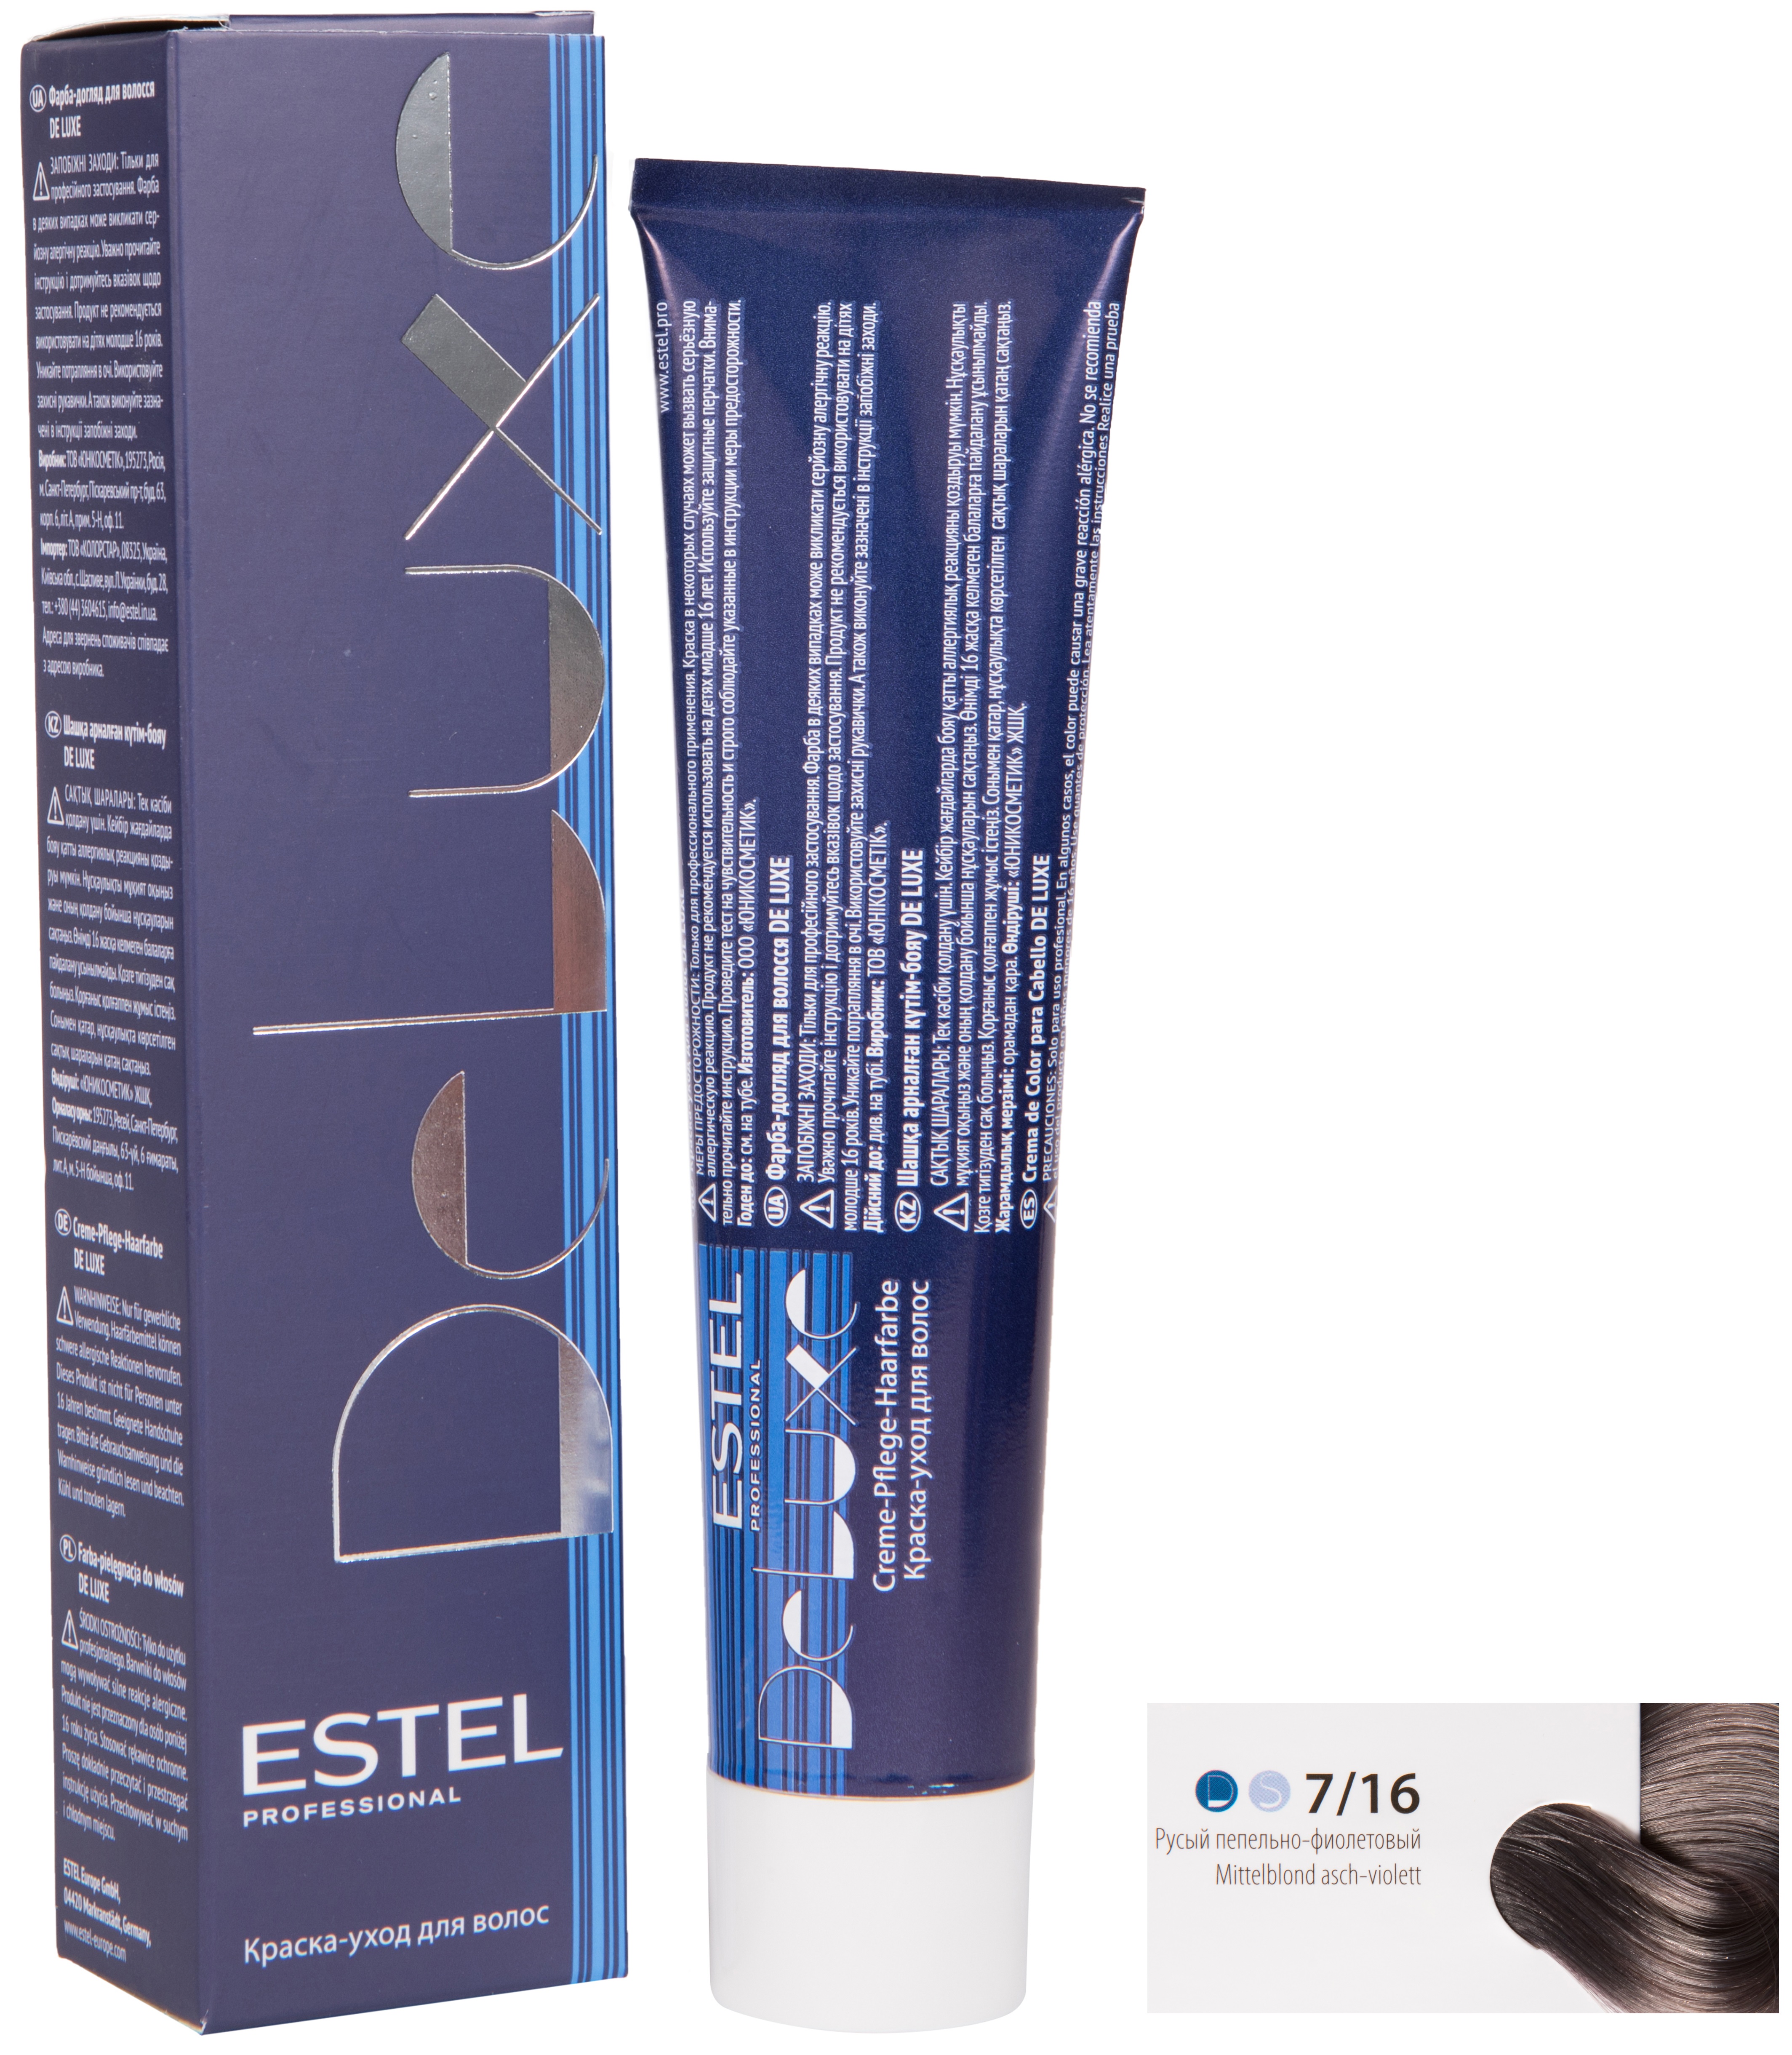 Краска для волос ESTEL PROFESSIONAL 7/16 DE LUXE краска-уход для окрашивания волос, русый пепельно-фиолетовый 60 мл